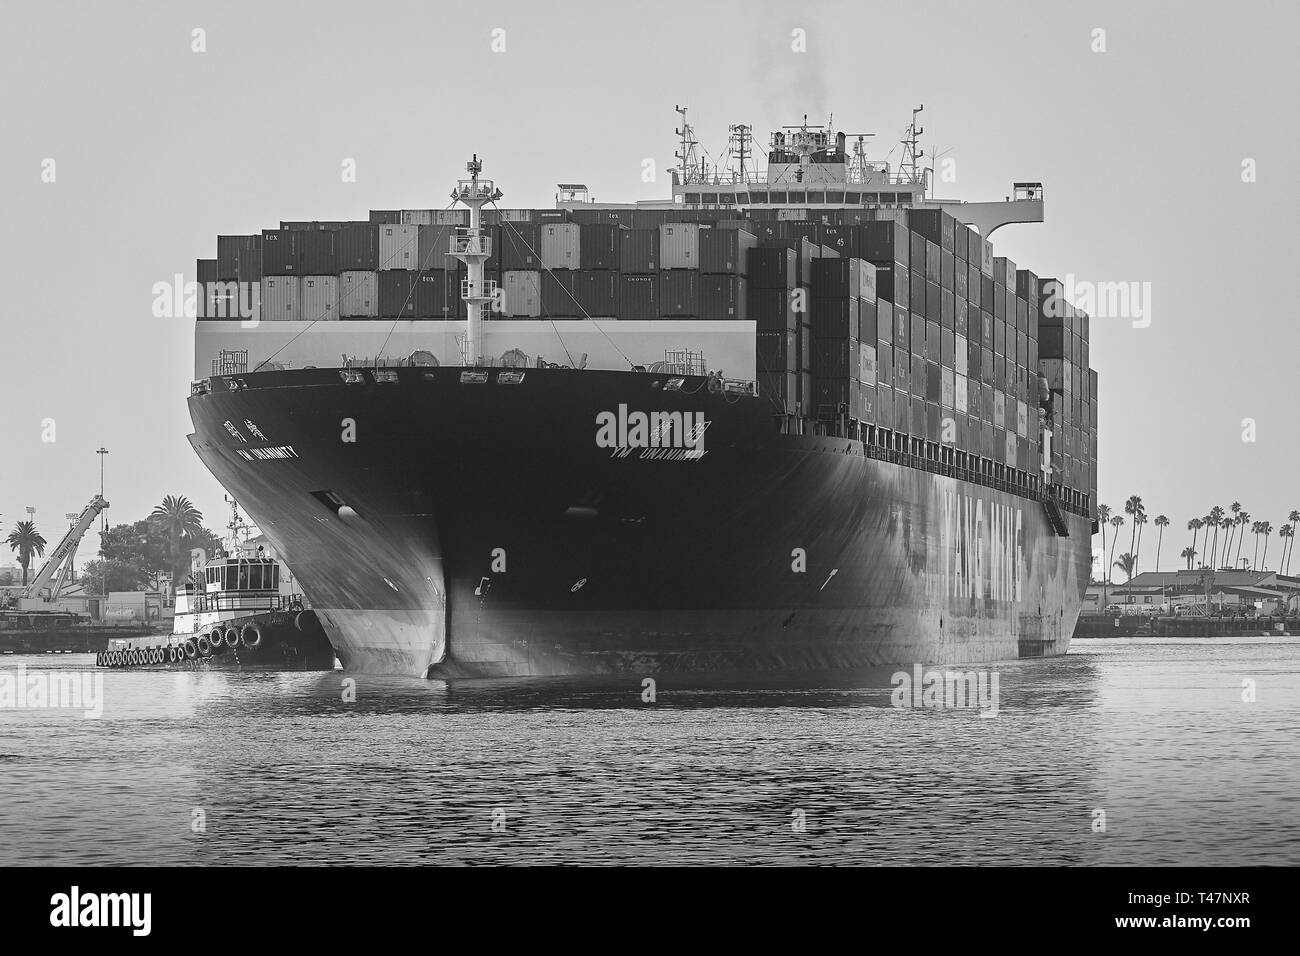 Photo en noir et blanc du porte-conteneurs, YM UNANIMITÉ, passant par le canal principal de Los Angeles, à destination du port de Los Angeles Banque D'Images